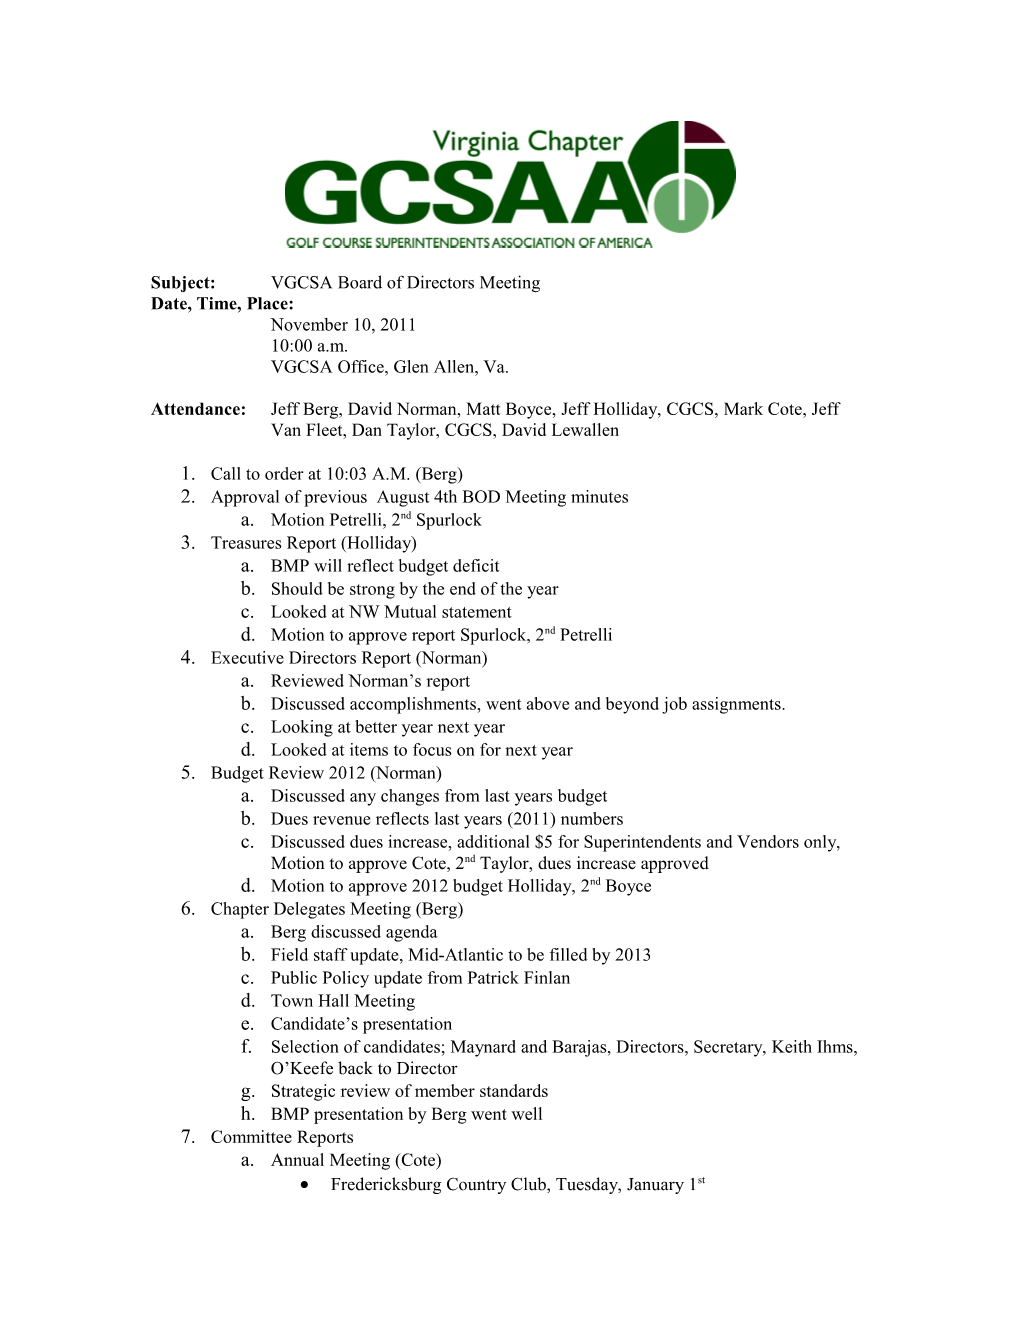 Subject:VGCSA Board of Directors Meeting